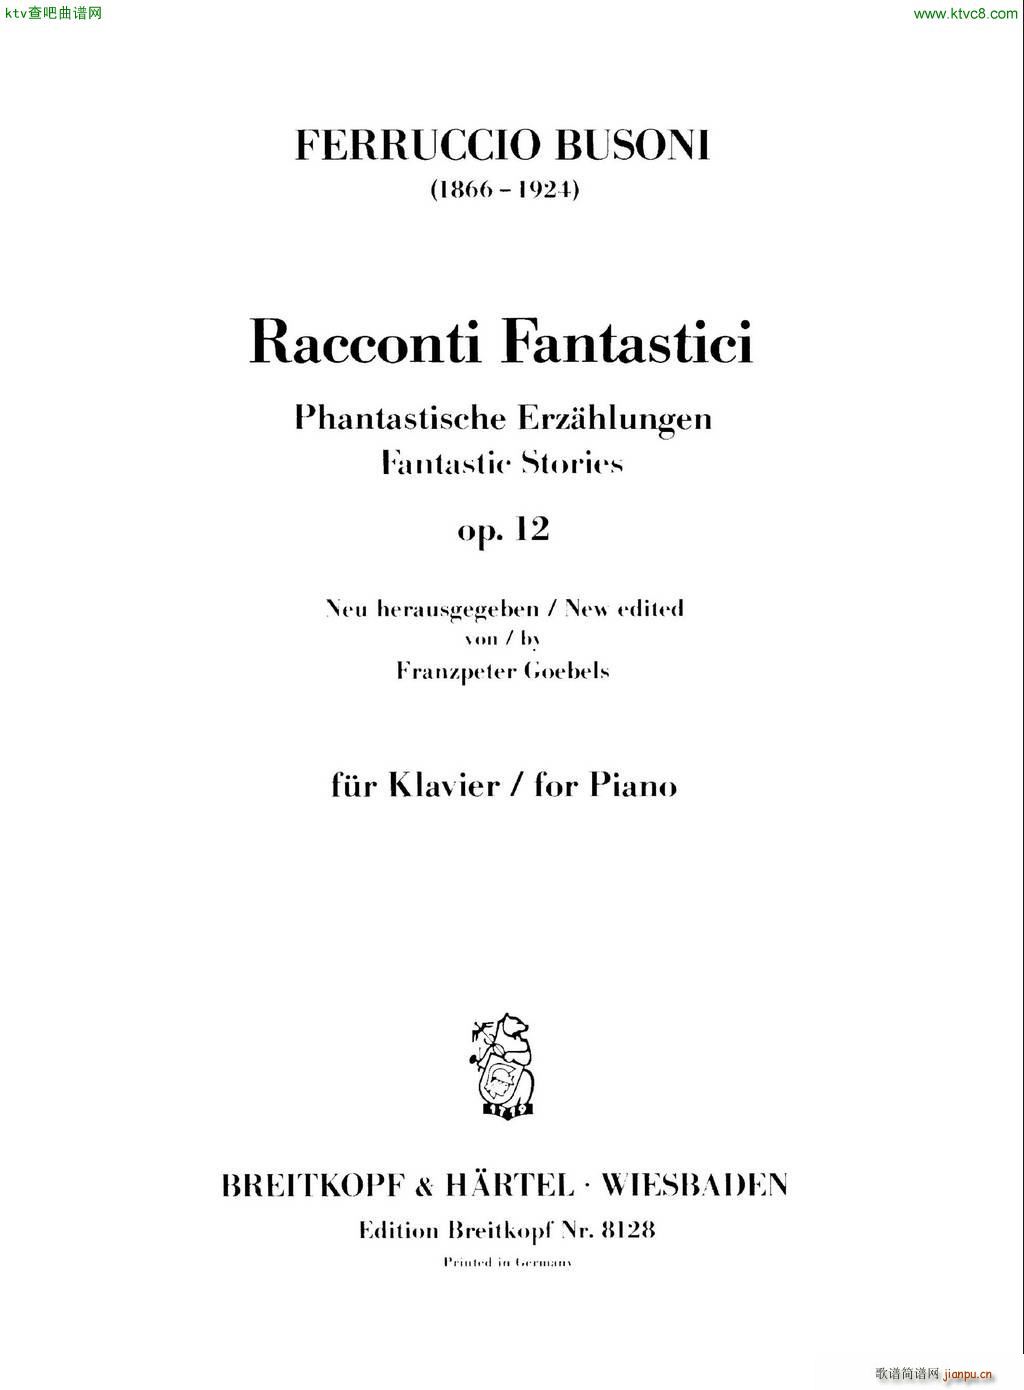 Racconti Fantastici op 12(钢琴谱)1